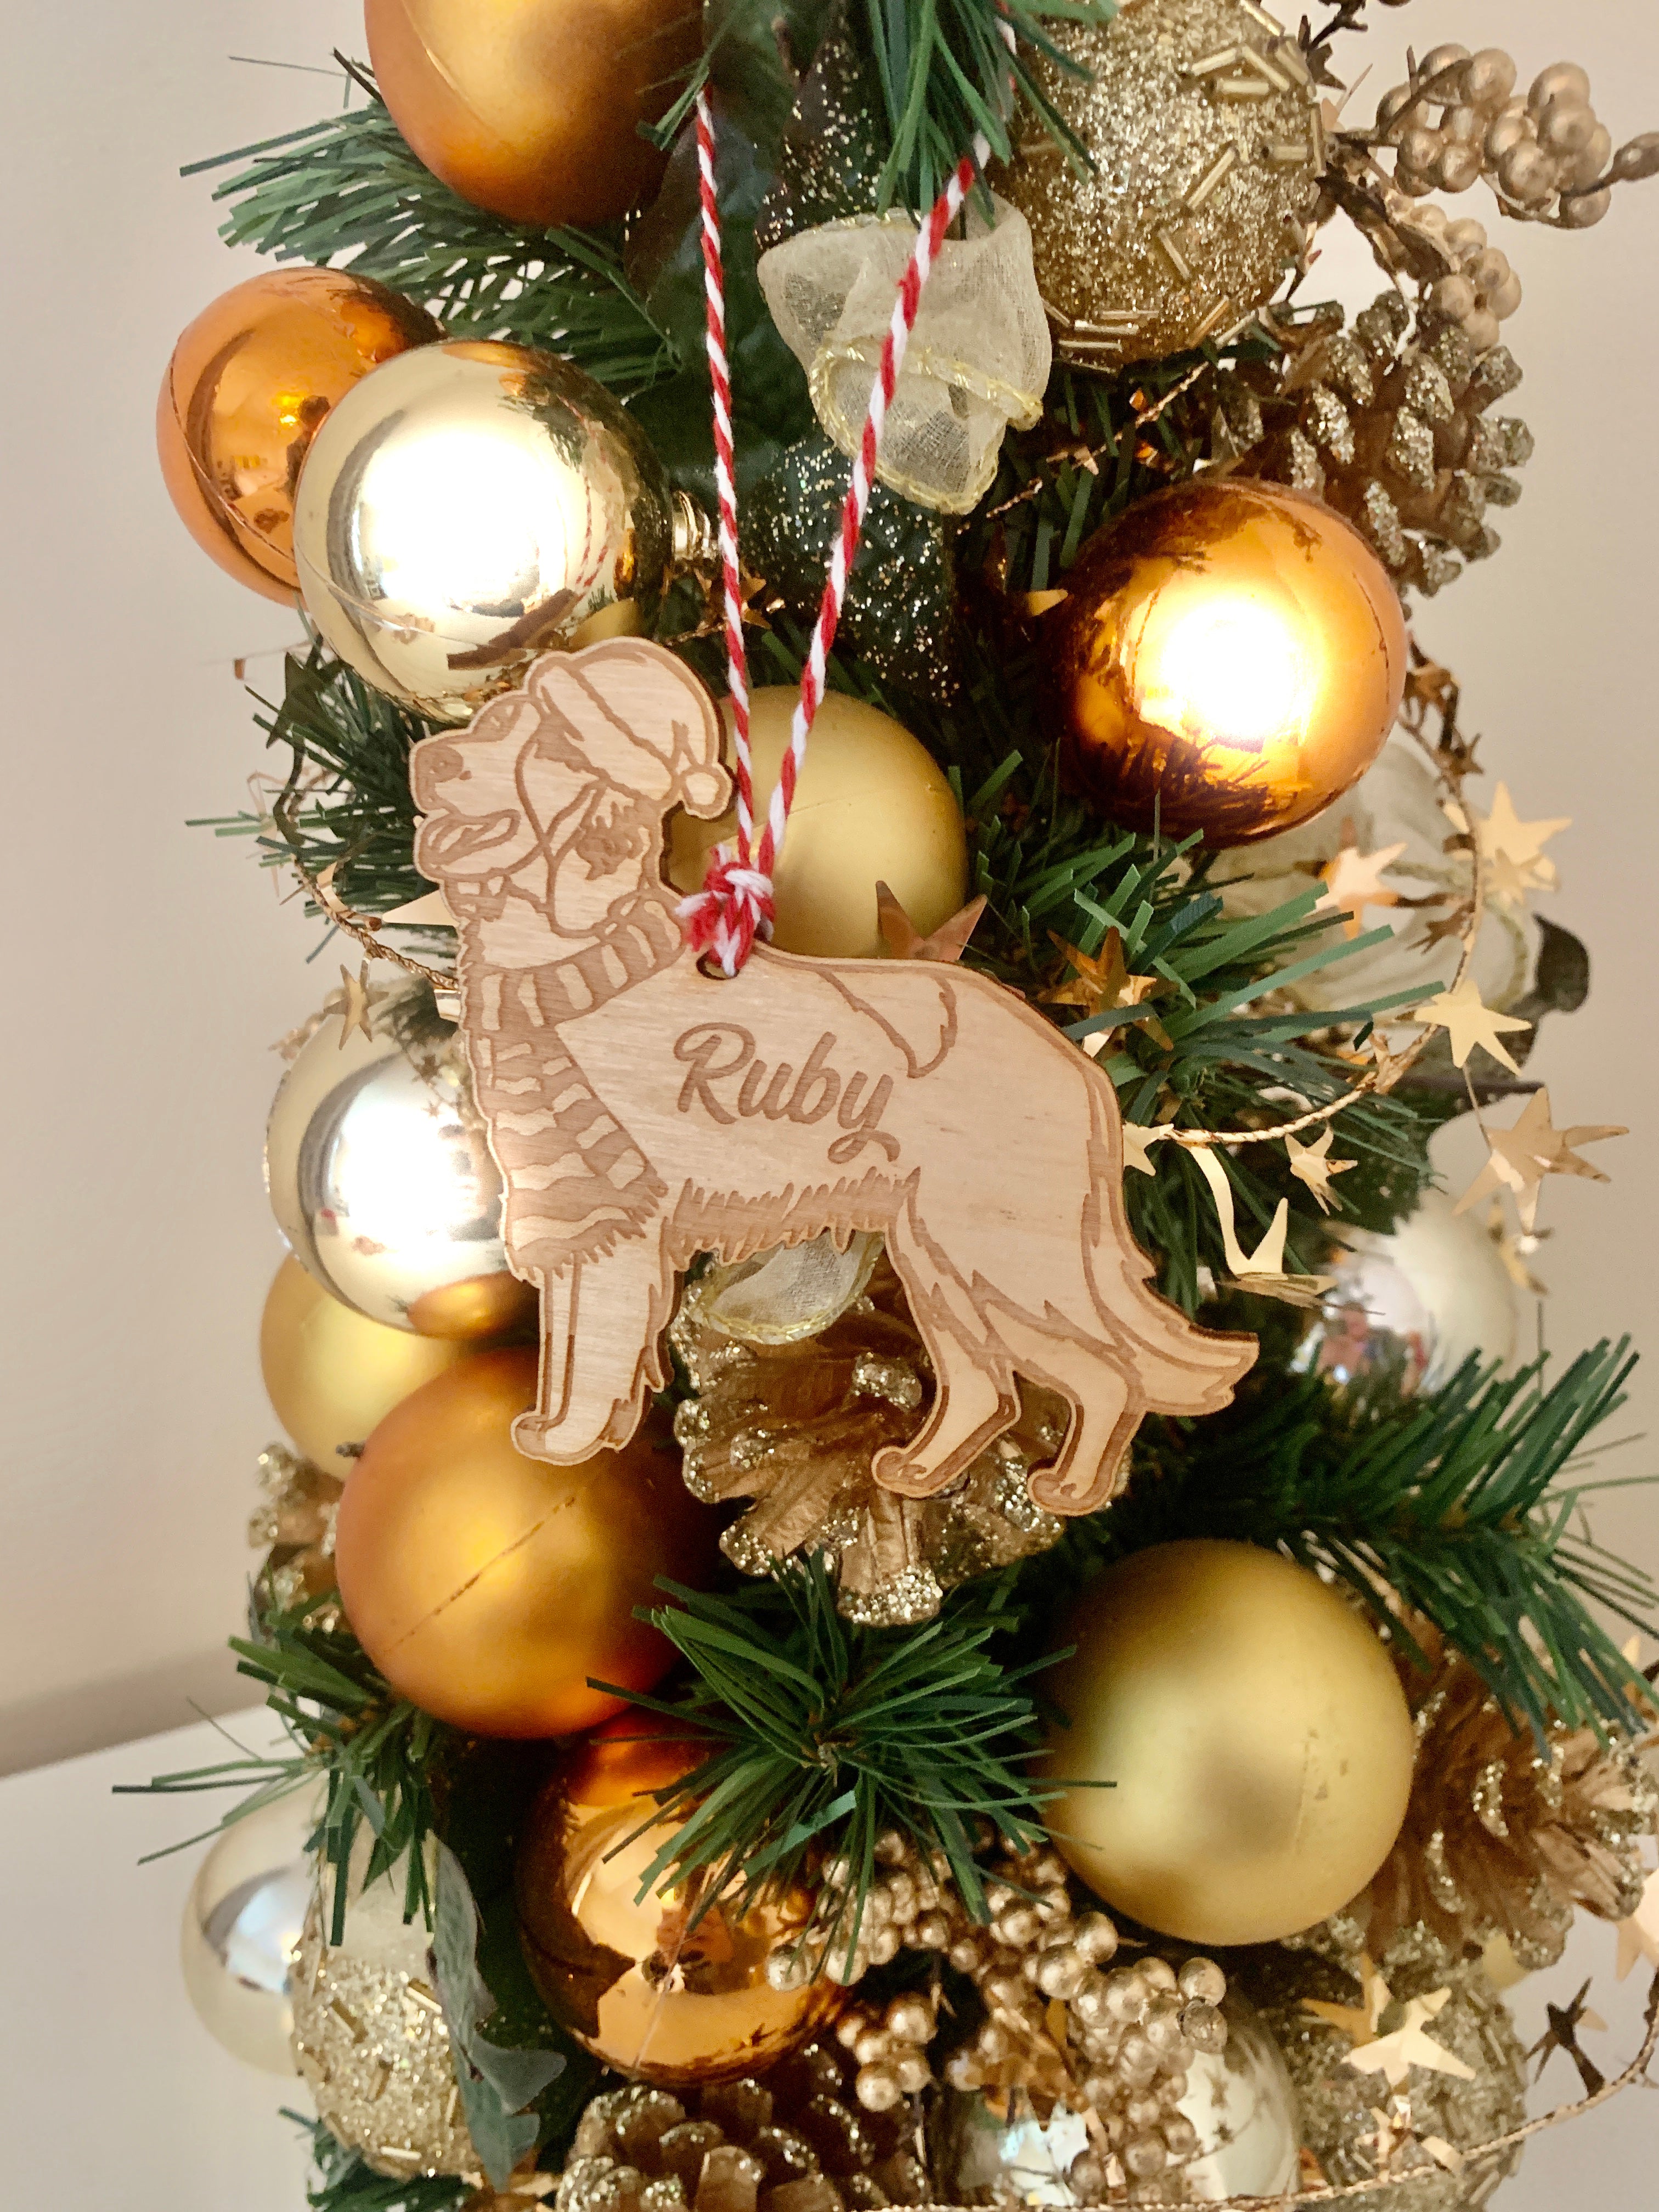 Irish Setter - Personalised Dog Christmas Tree Decoration Bauble